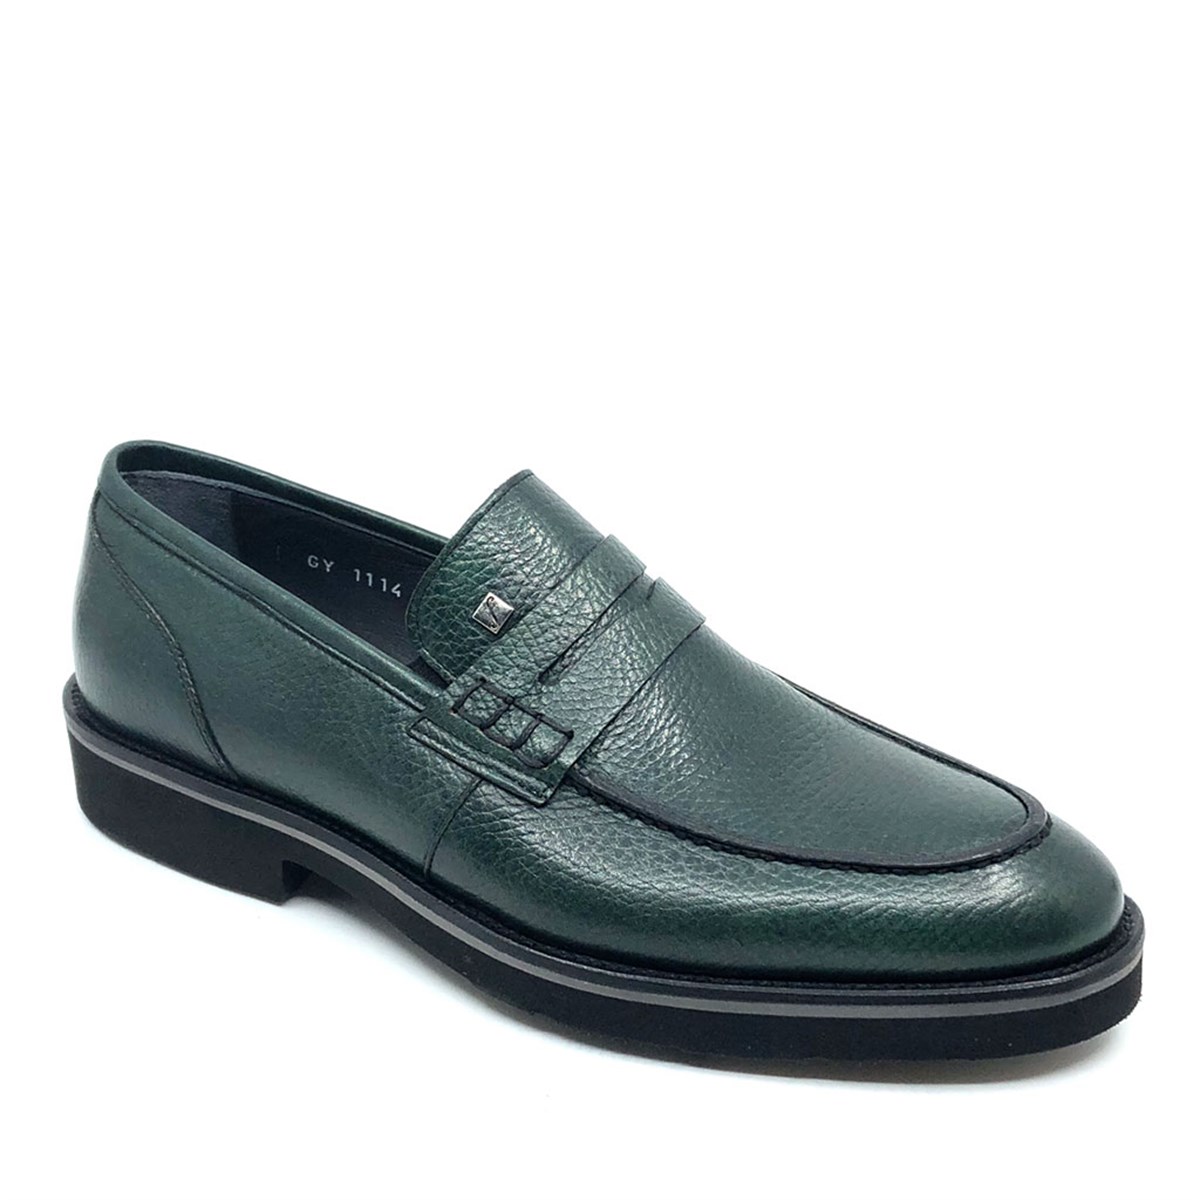 Fosco Yeşil Hakiki Deri Erkek Ayakkabı 1114 777 - Fosco